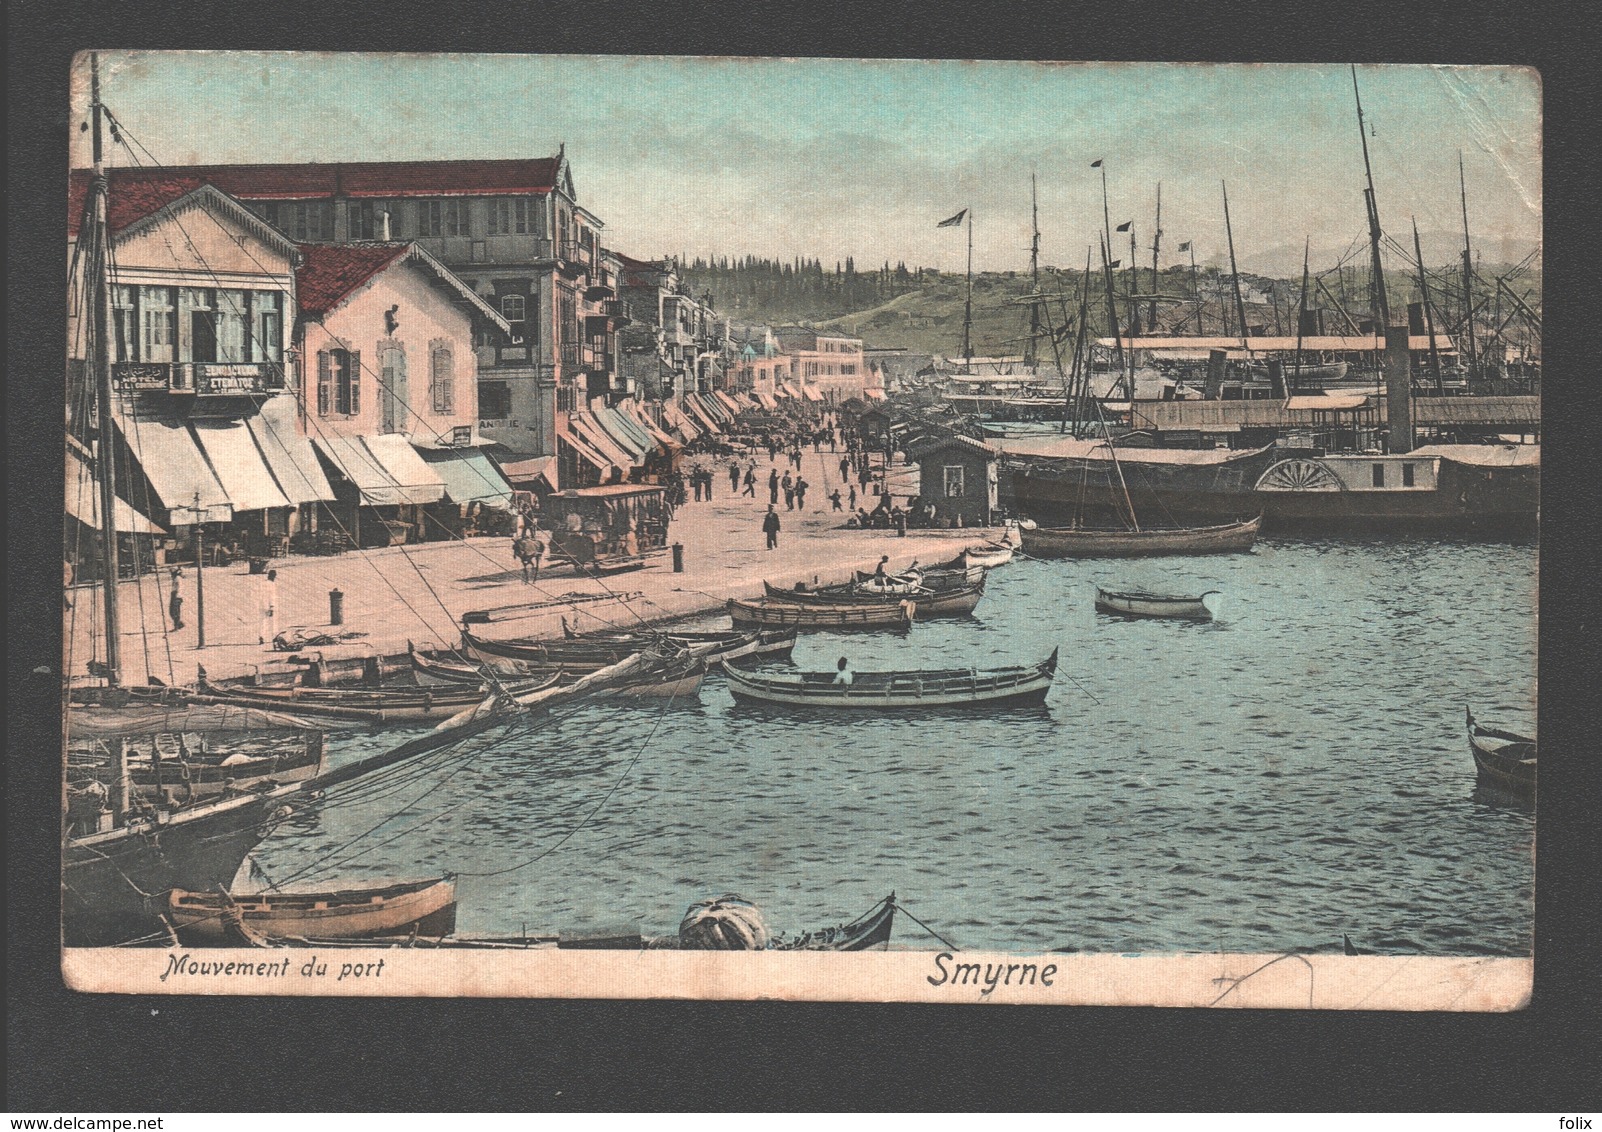 Smyrne - Mouvement Du Port - Paardentram / Horse Tram / Tramway à Cheval - Boat/ Bateau - Harbour / Haven / Hafen - 1910 - Turquie